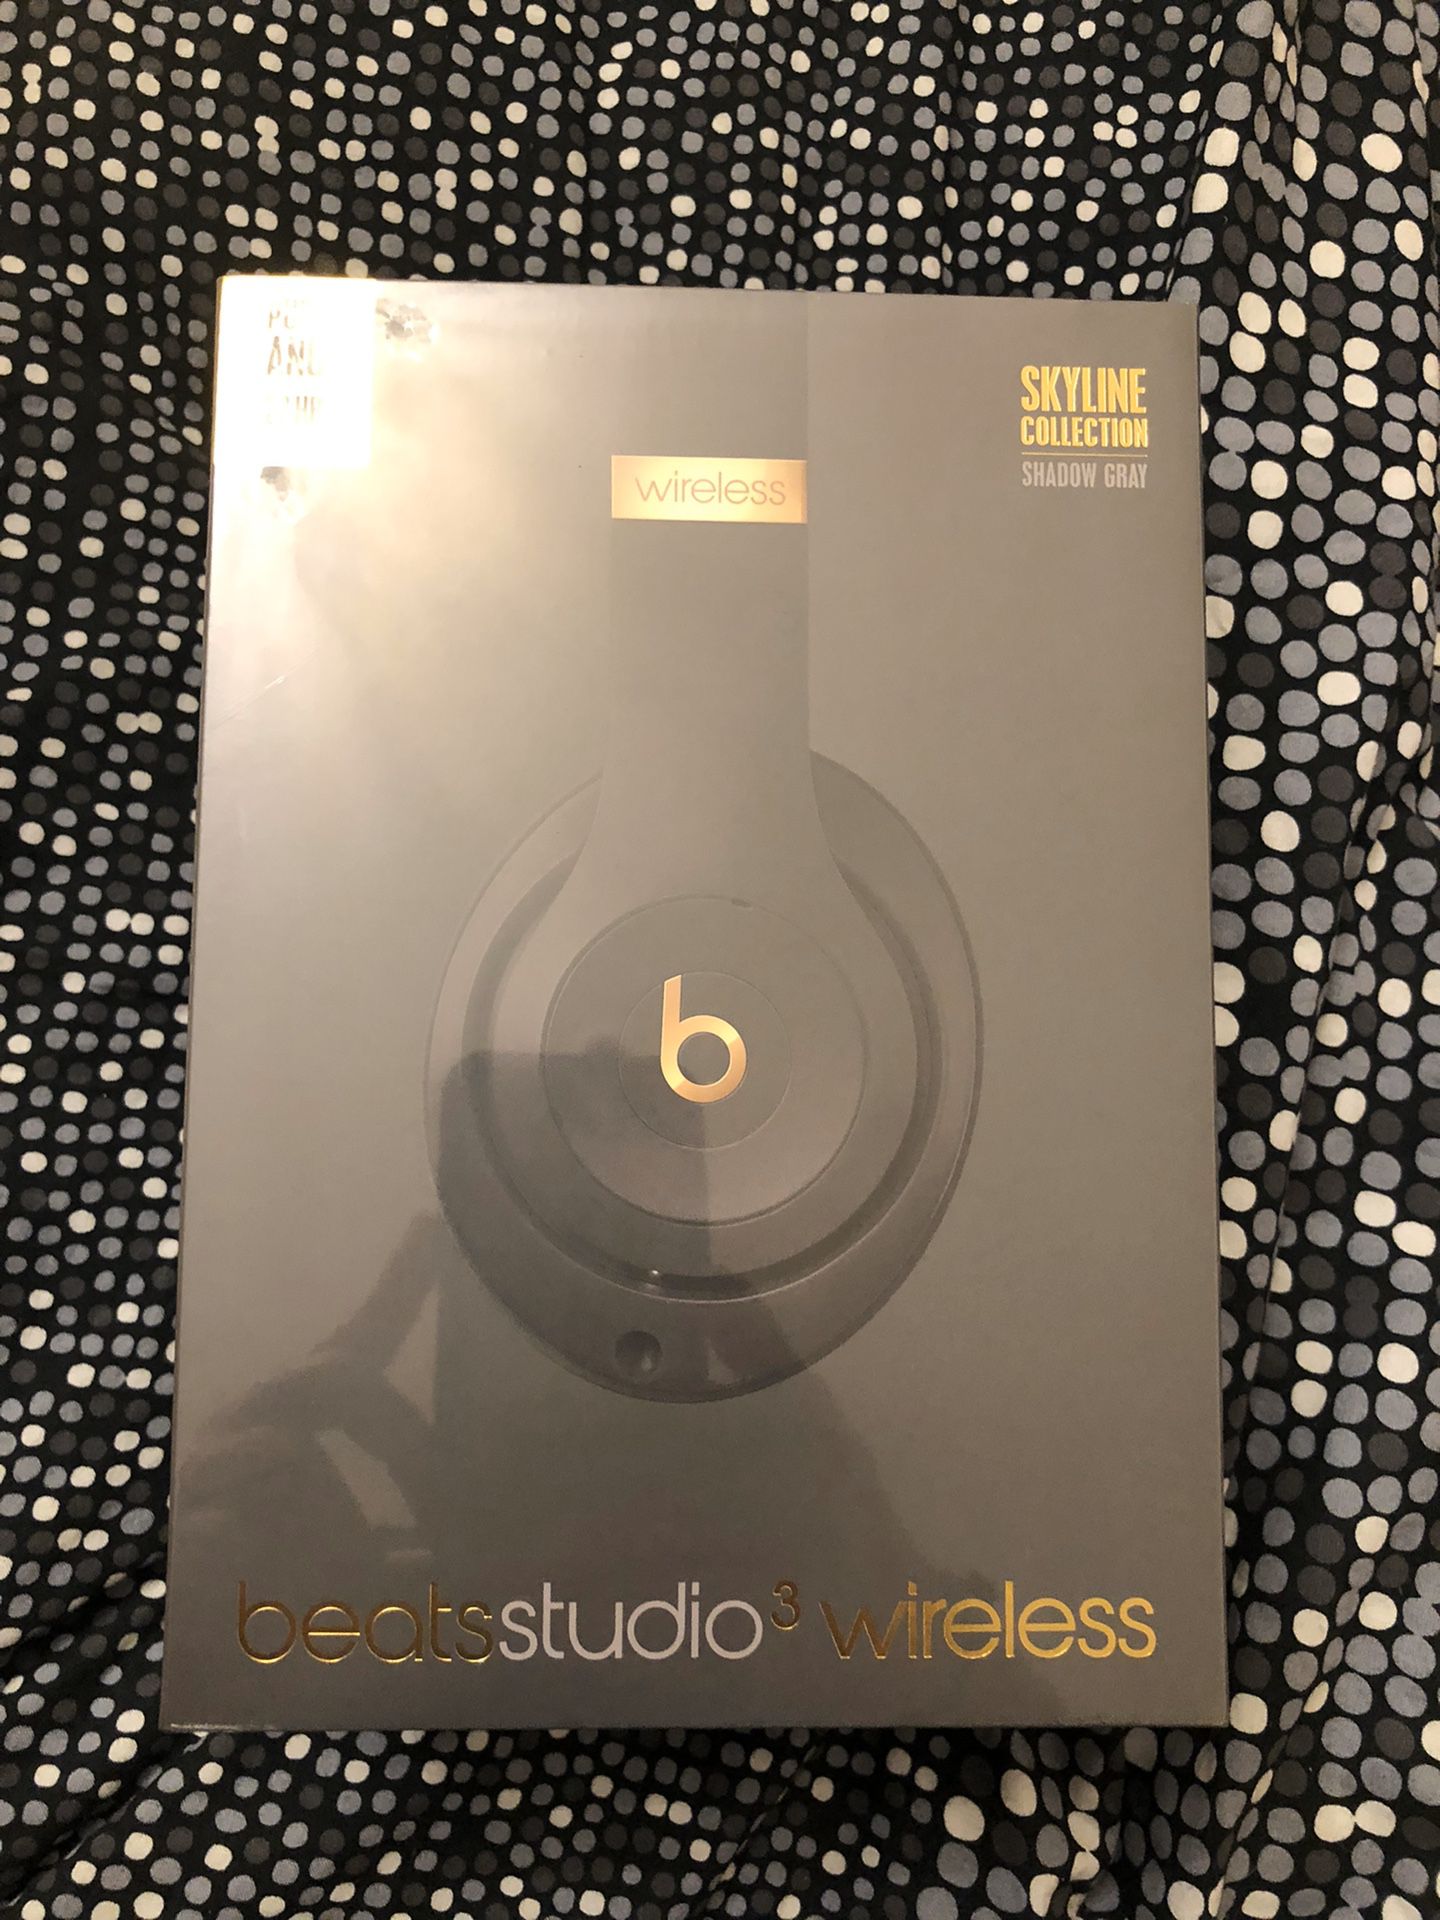 Beats Studio wireless Headphones